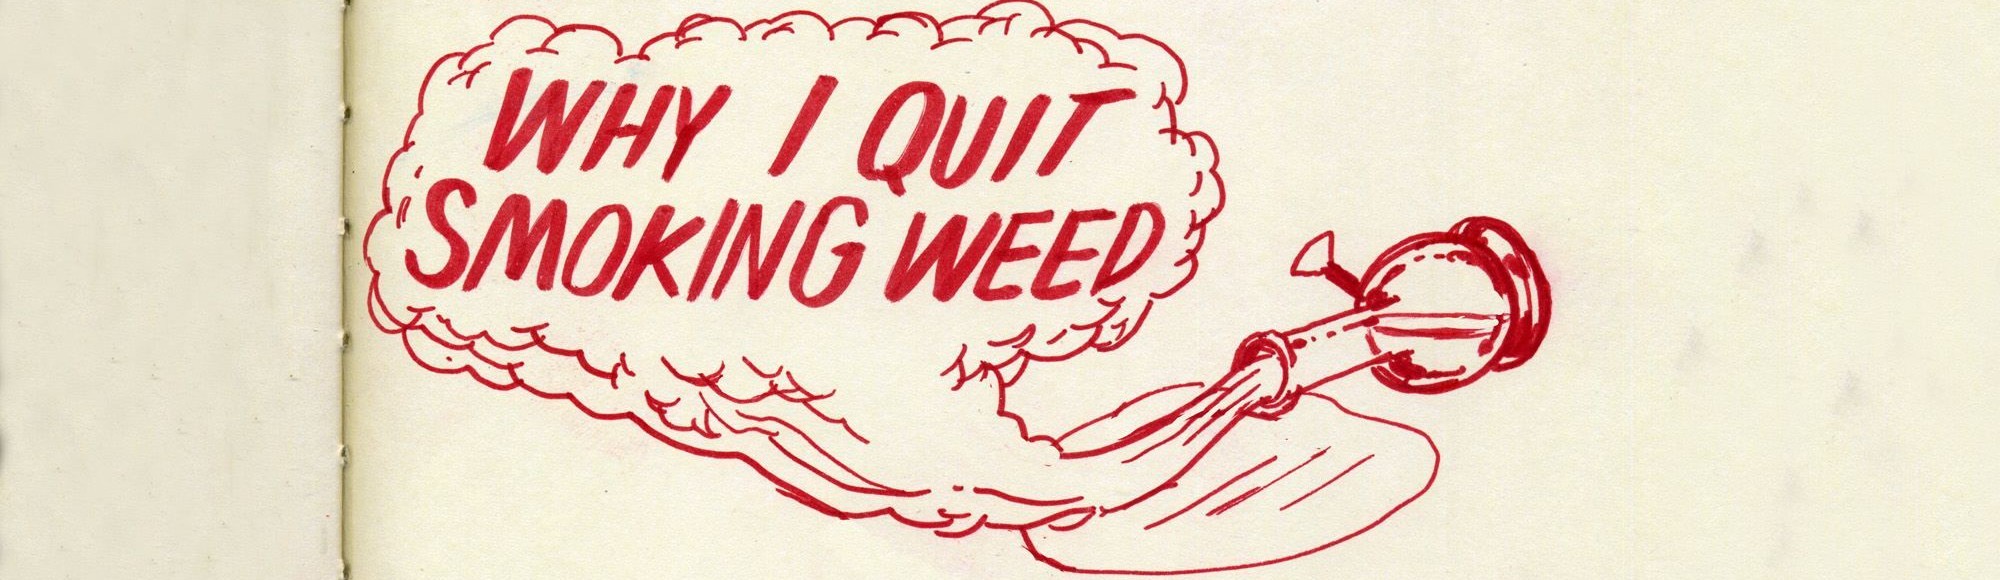 i stopped smoking weed now im depressed